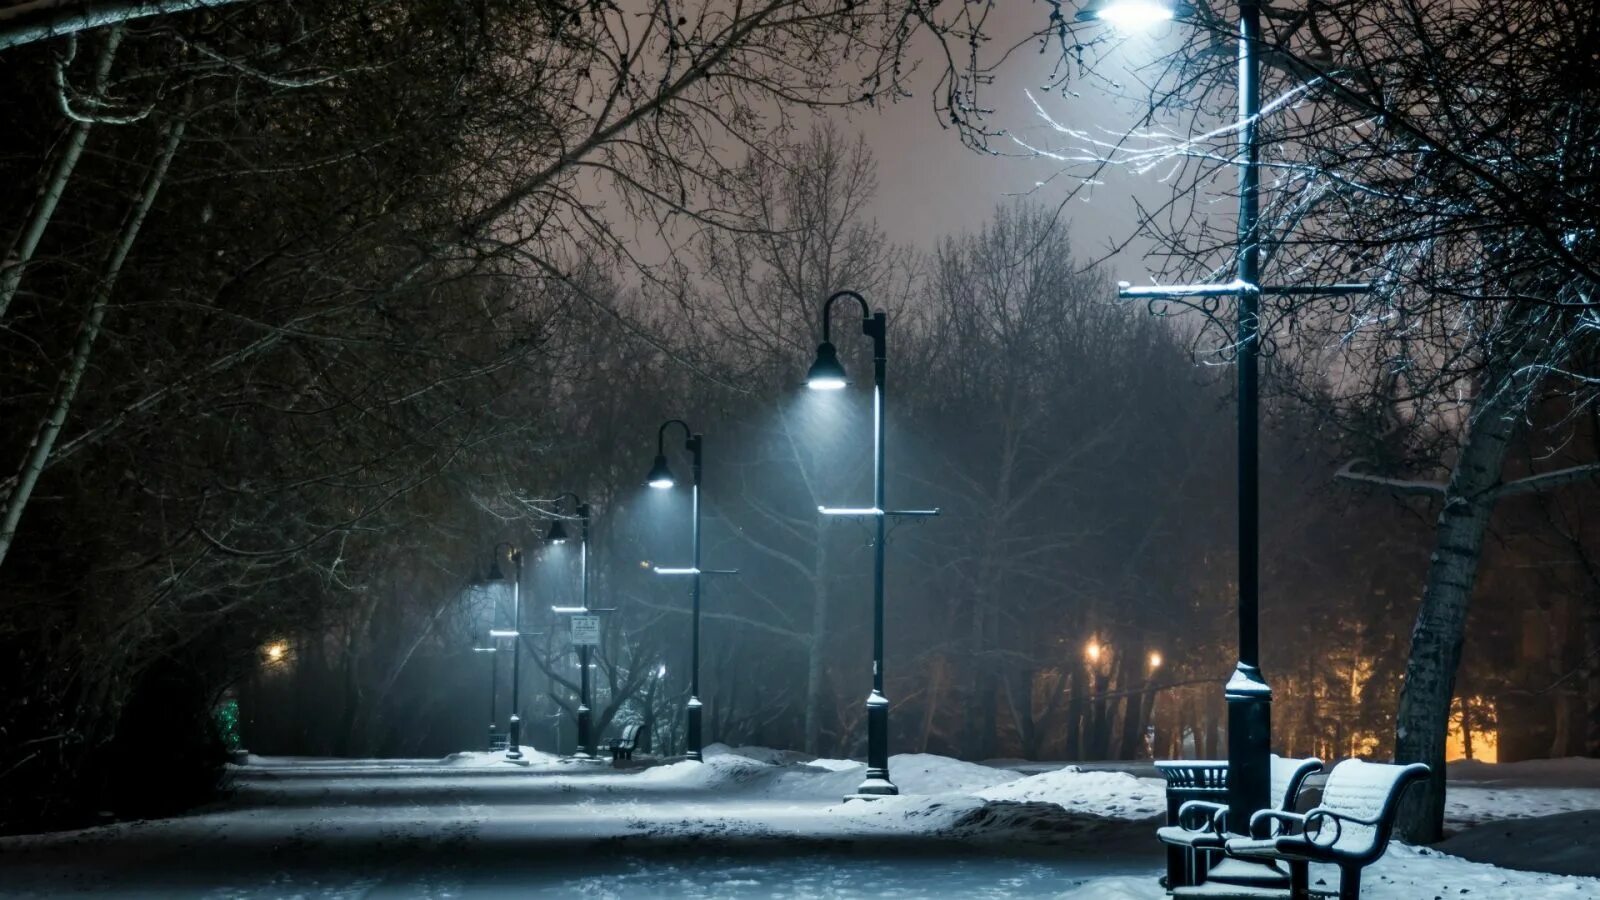 Фонари холодный свет. Зима в городе. Зимняя ночь. Зимний парк ночью. Зима. К вечеру.